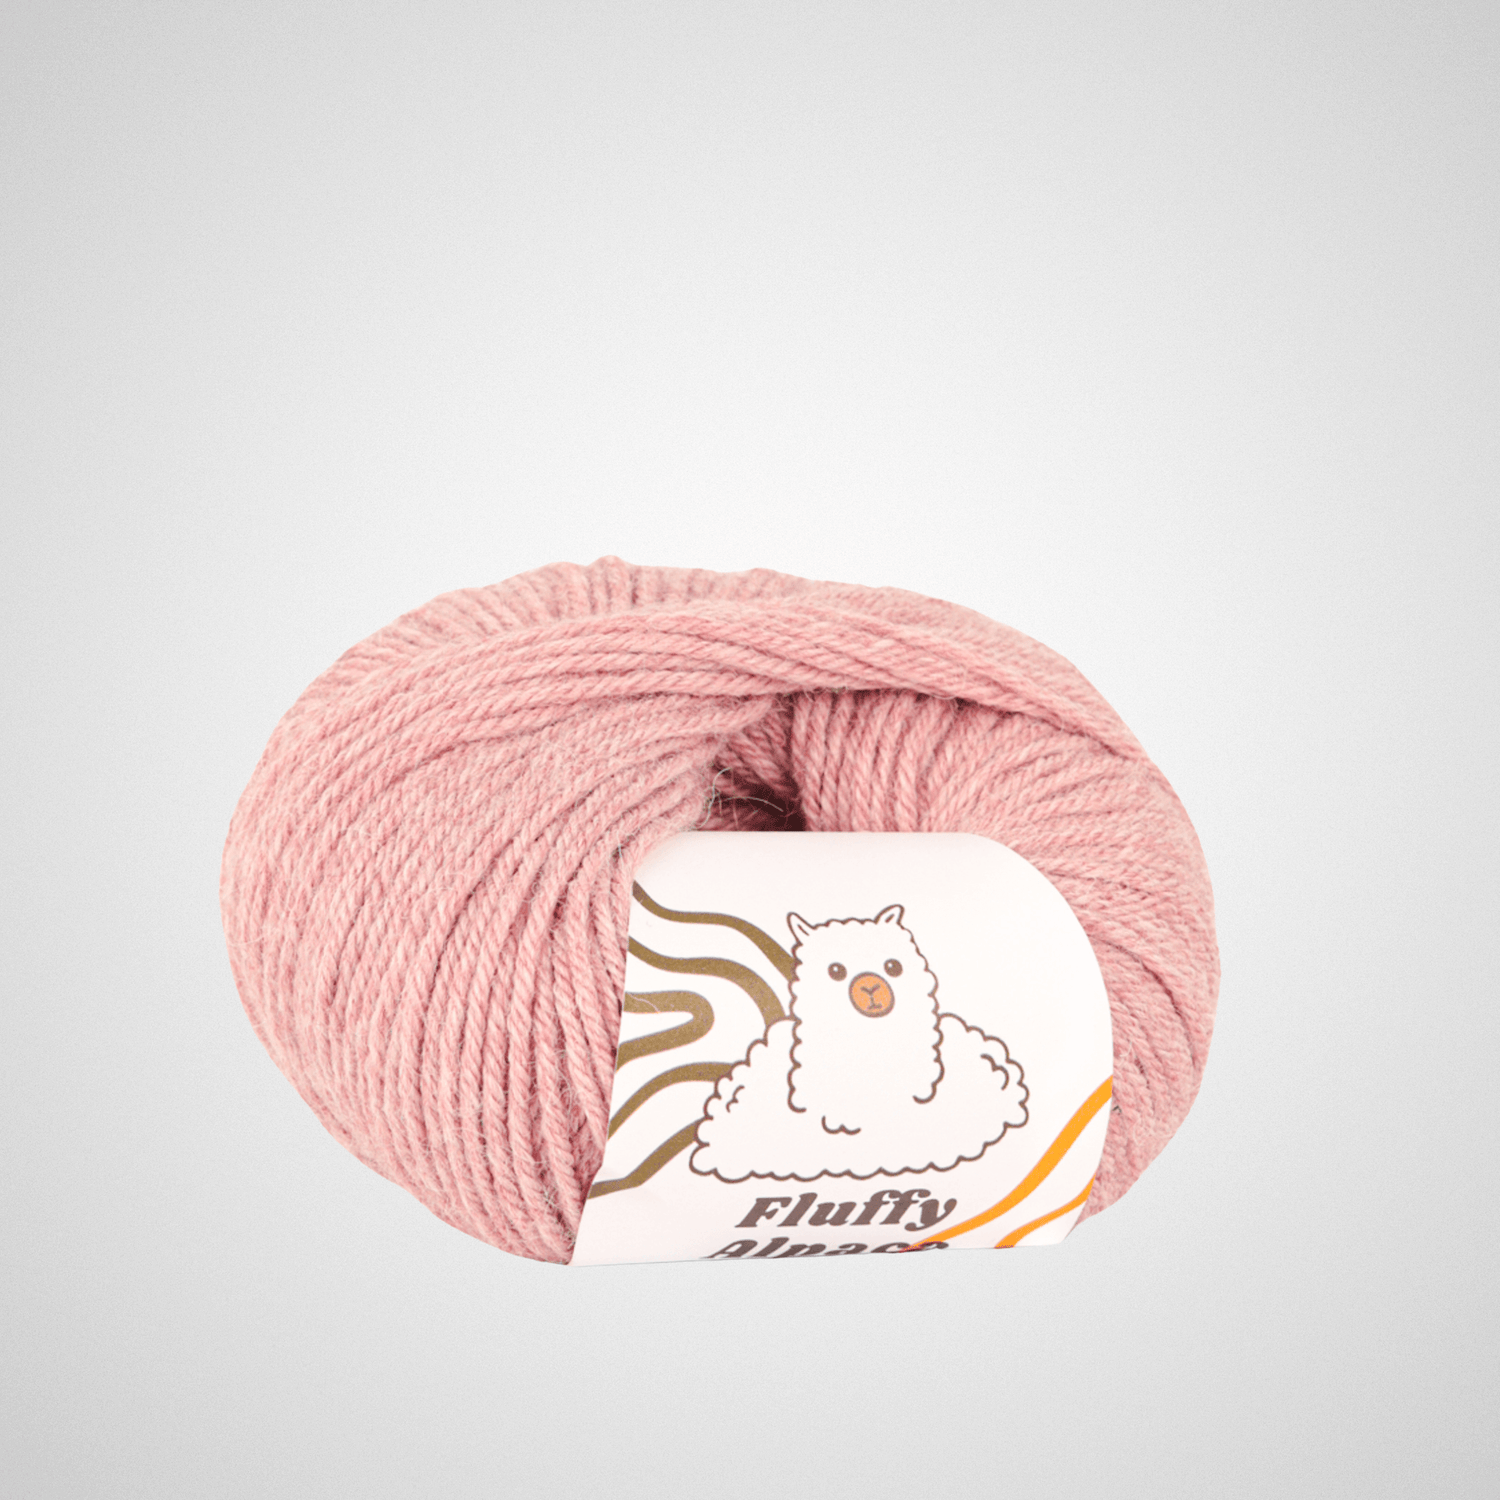 Fluffy Alpaca - Knitting thread - 100% alpaca wool - Pink